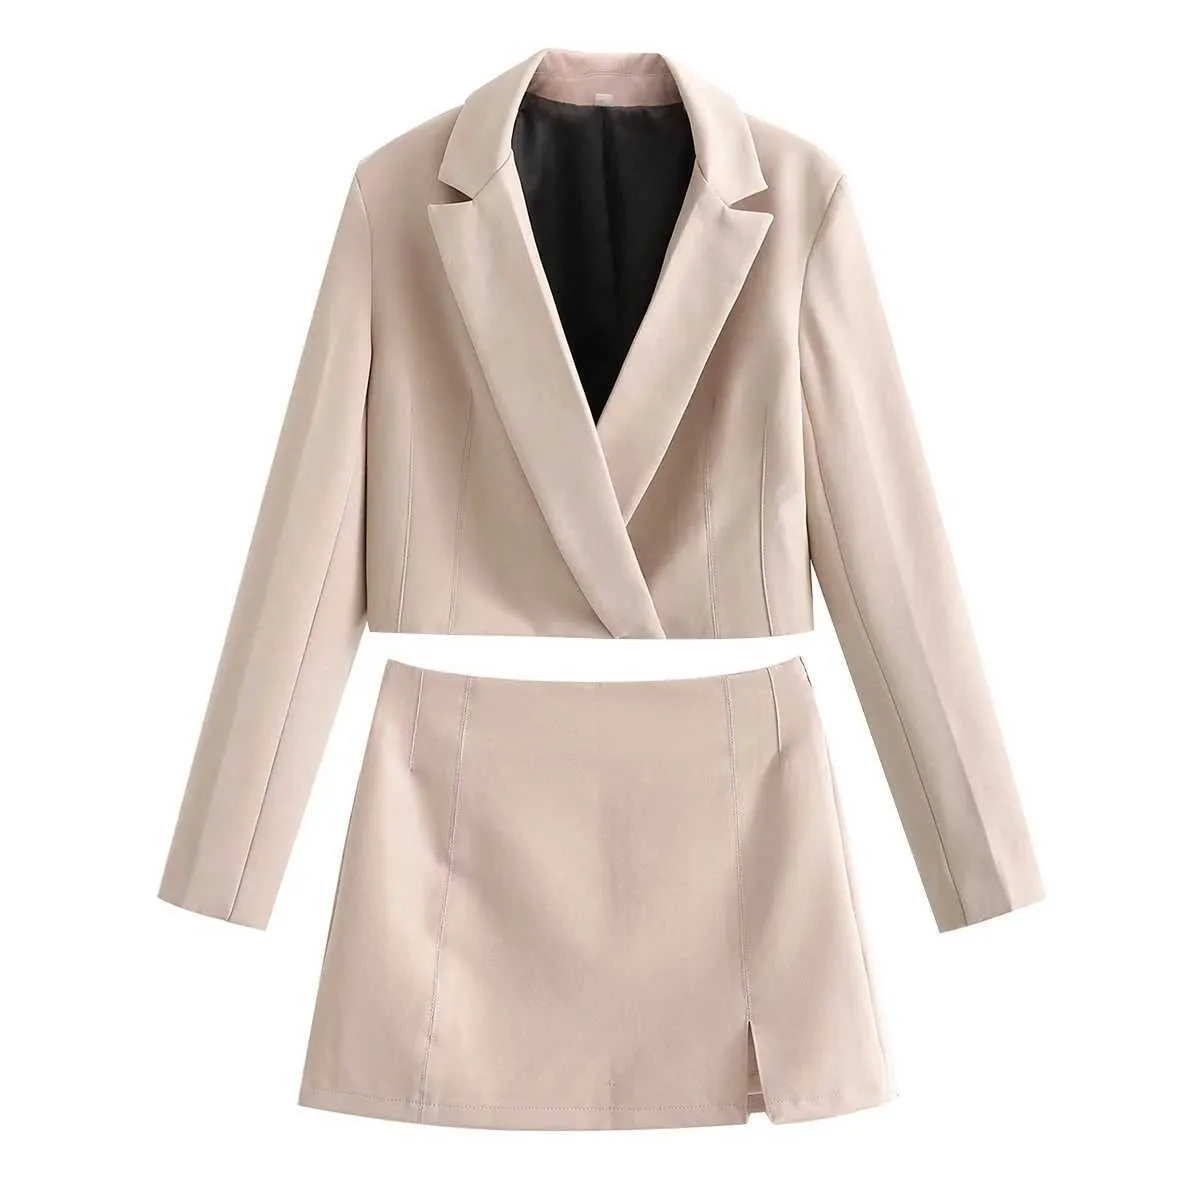 ZA Kadınlar Moda Yüksek Bel Kısa Suit Ceket Vintage Kadın Giyim Bölünmüş Kalça Etek 2-piece Set Xitimeao 211006